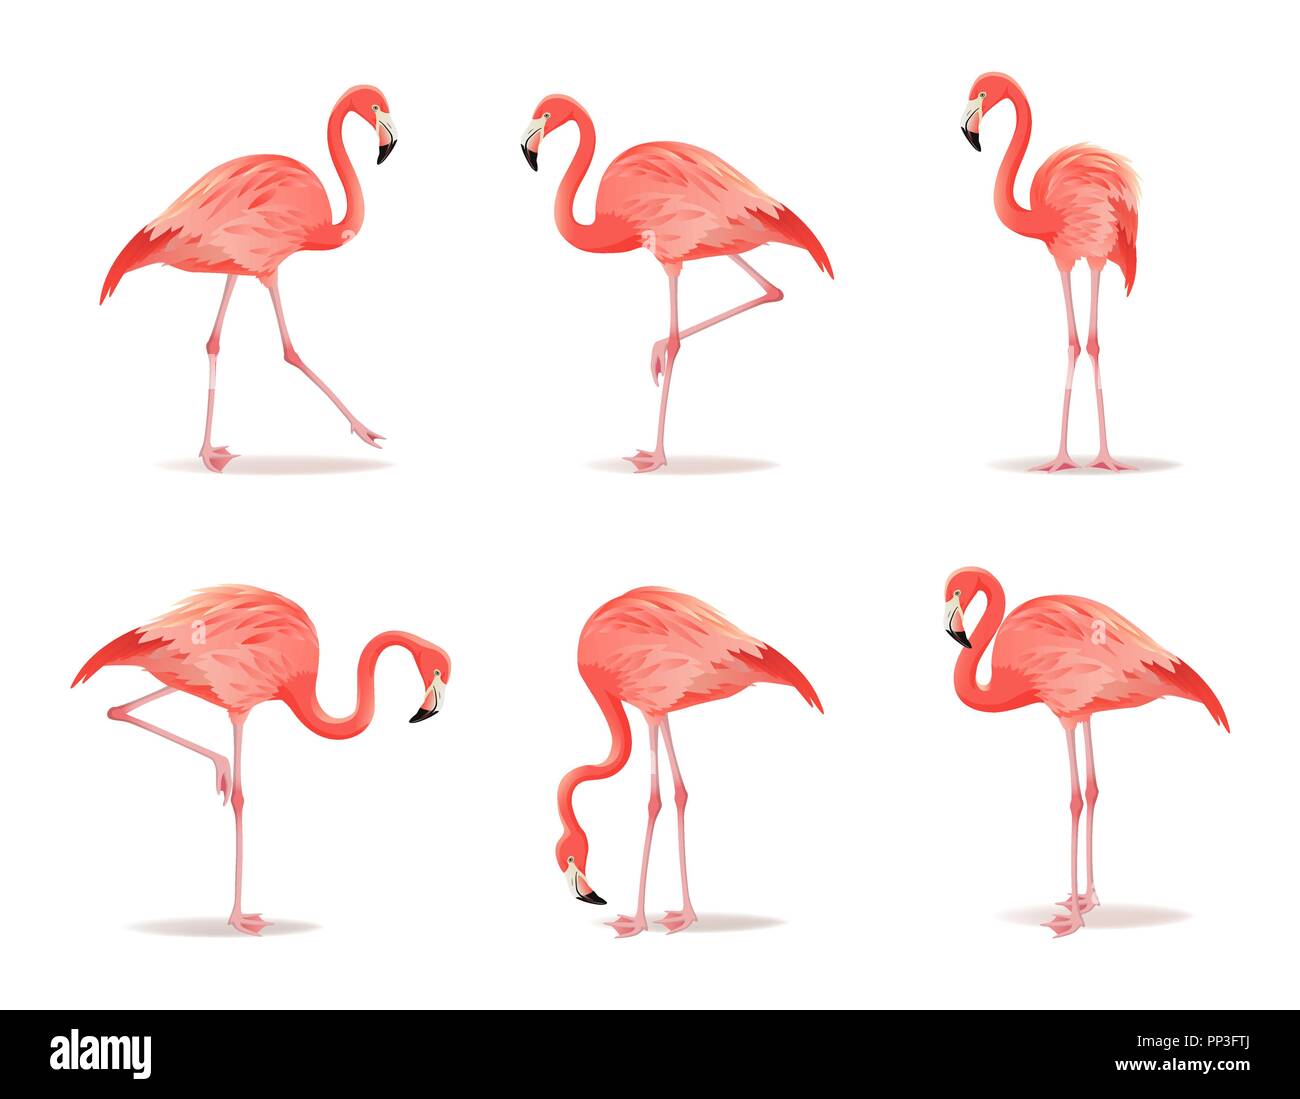 Rosso e fenicottero rosa set, illustrazione vettoriale. Raffreddare gli uccelli esotici in diverse pose design decorativo raccolta di elementi. Flamingo isolati su sfondo bianco Illustrazione Vettoriale